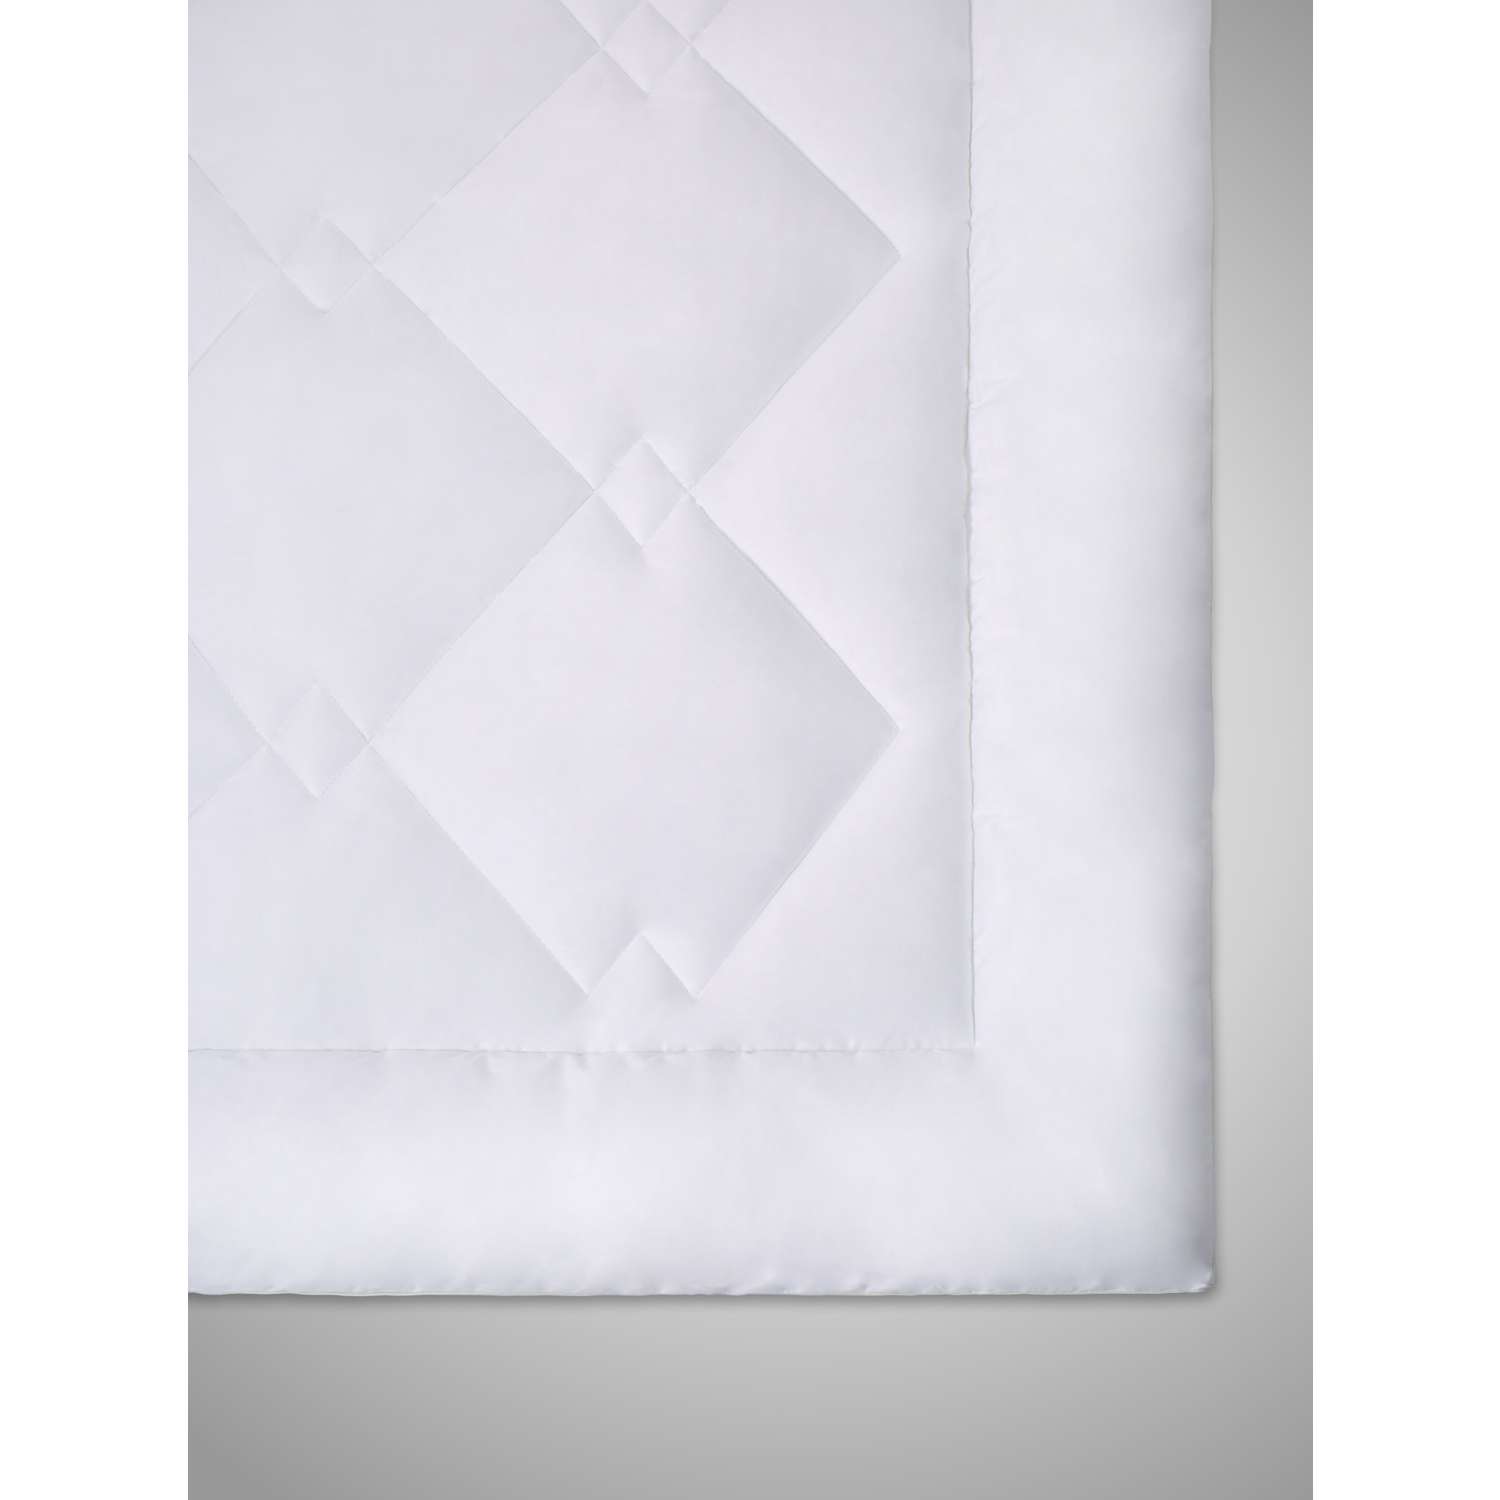 Одеяло SONNO URBAN 1.5 спальный 140x205 с наполнителем Amicor Ослепительно белый - фото 2